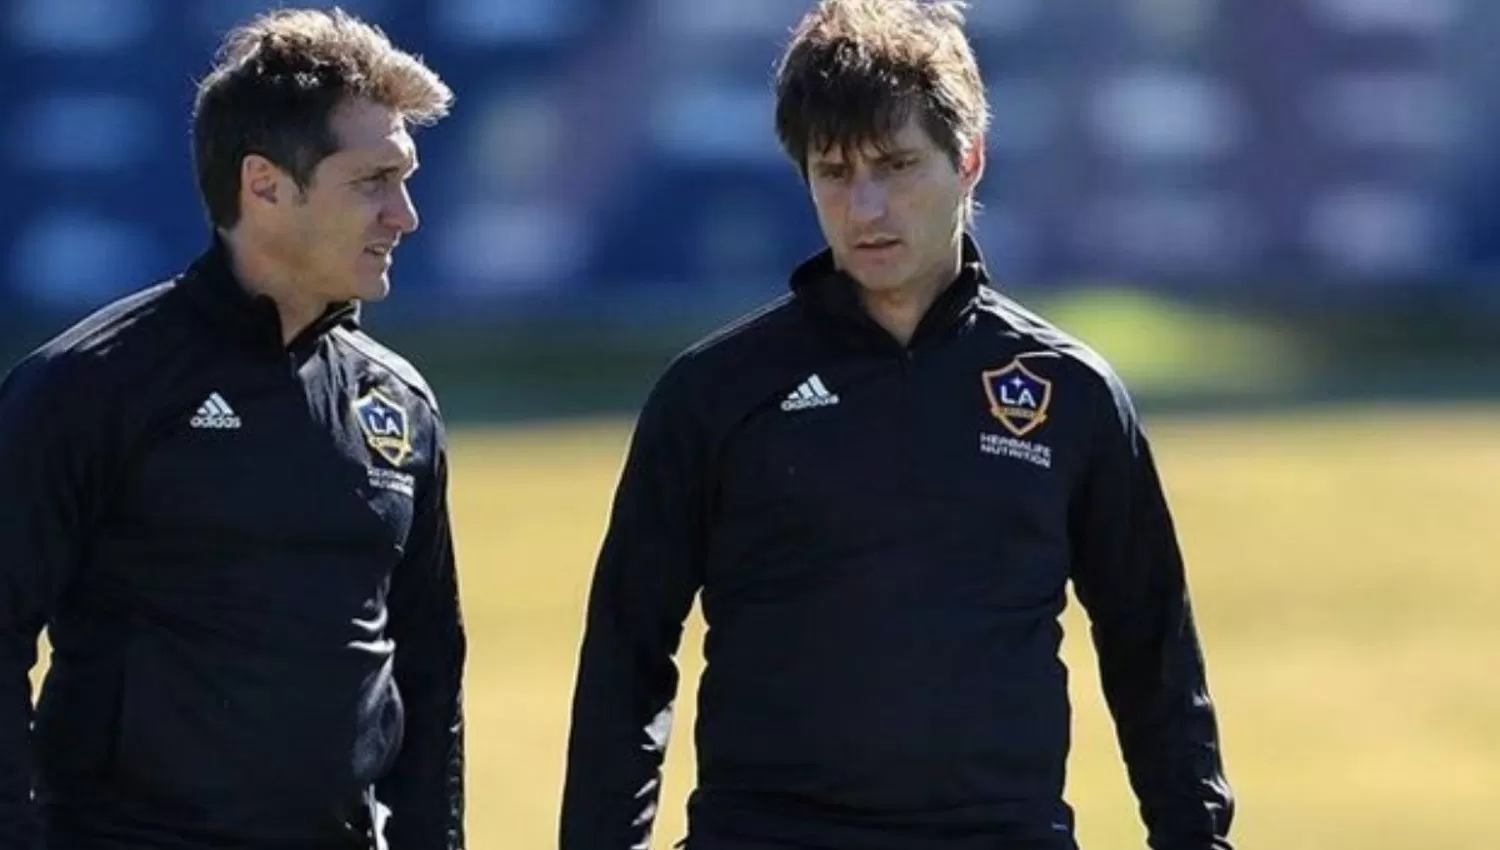 EN LA MLS. Los hermanos Barros Schelotto trabajaron juntos en LA Galaxy de los Estados Unidos.